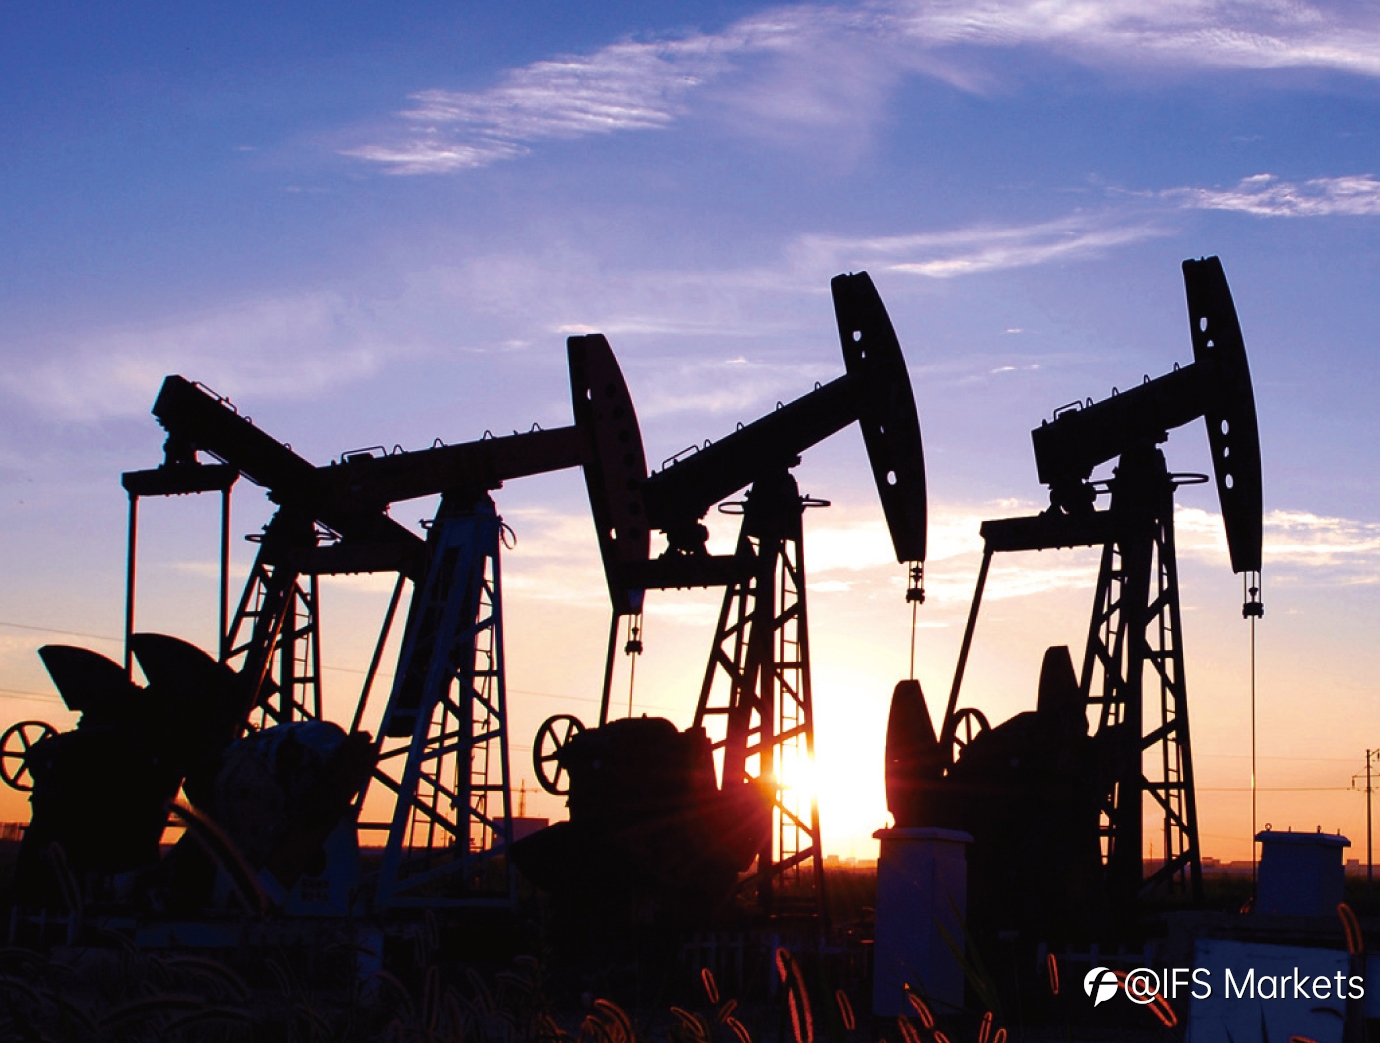 原油交易提醒：恐慌情绪上升致油价回落至两个月低位，关注OPEC会议+EIA数据影响